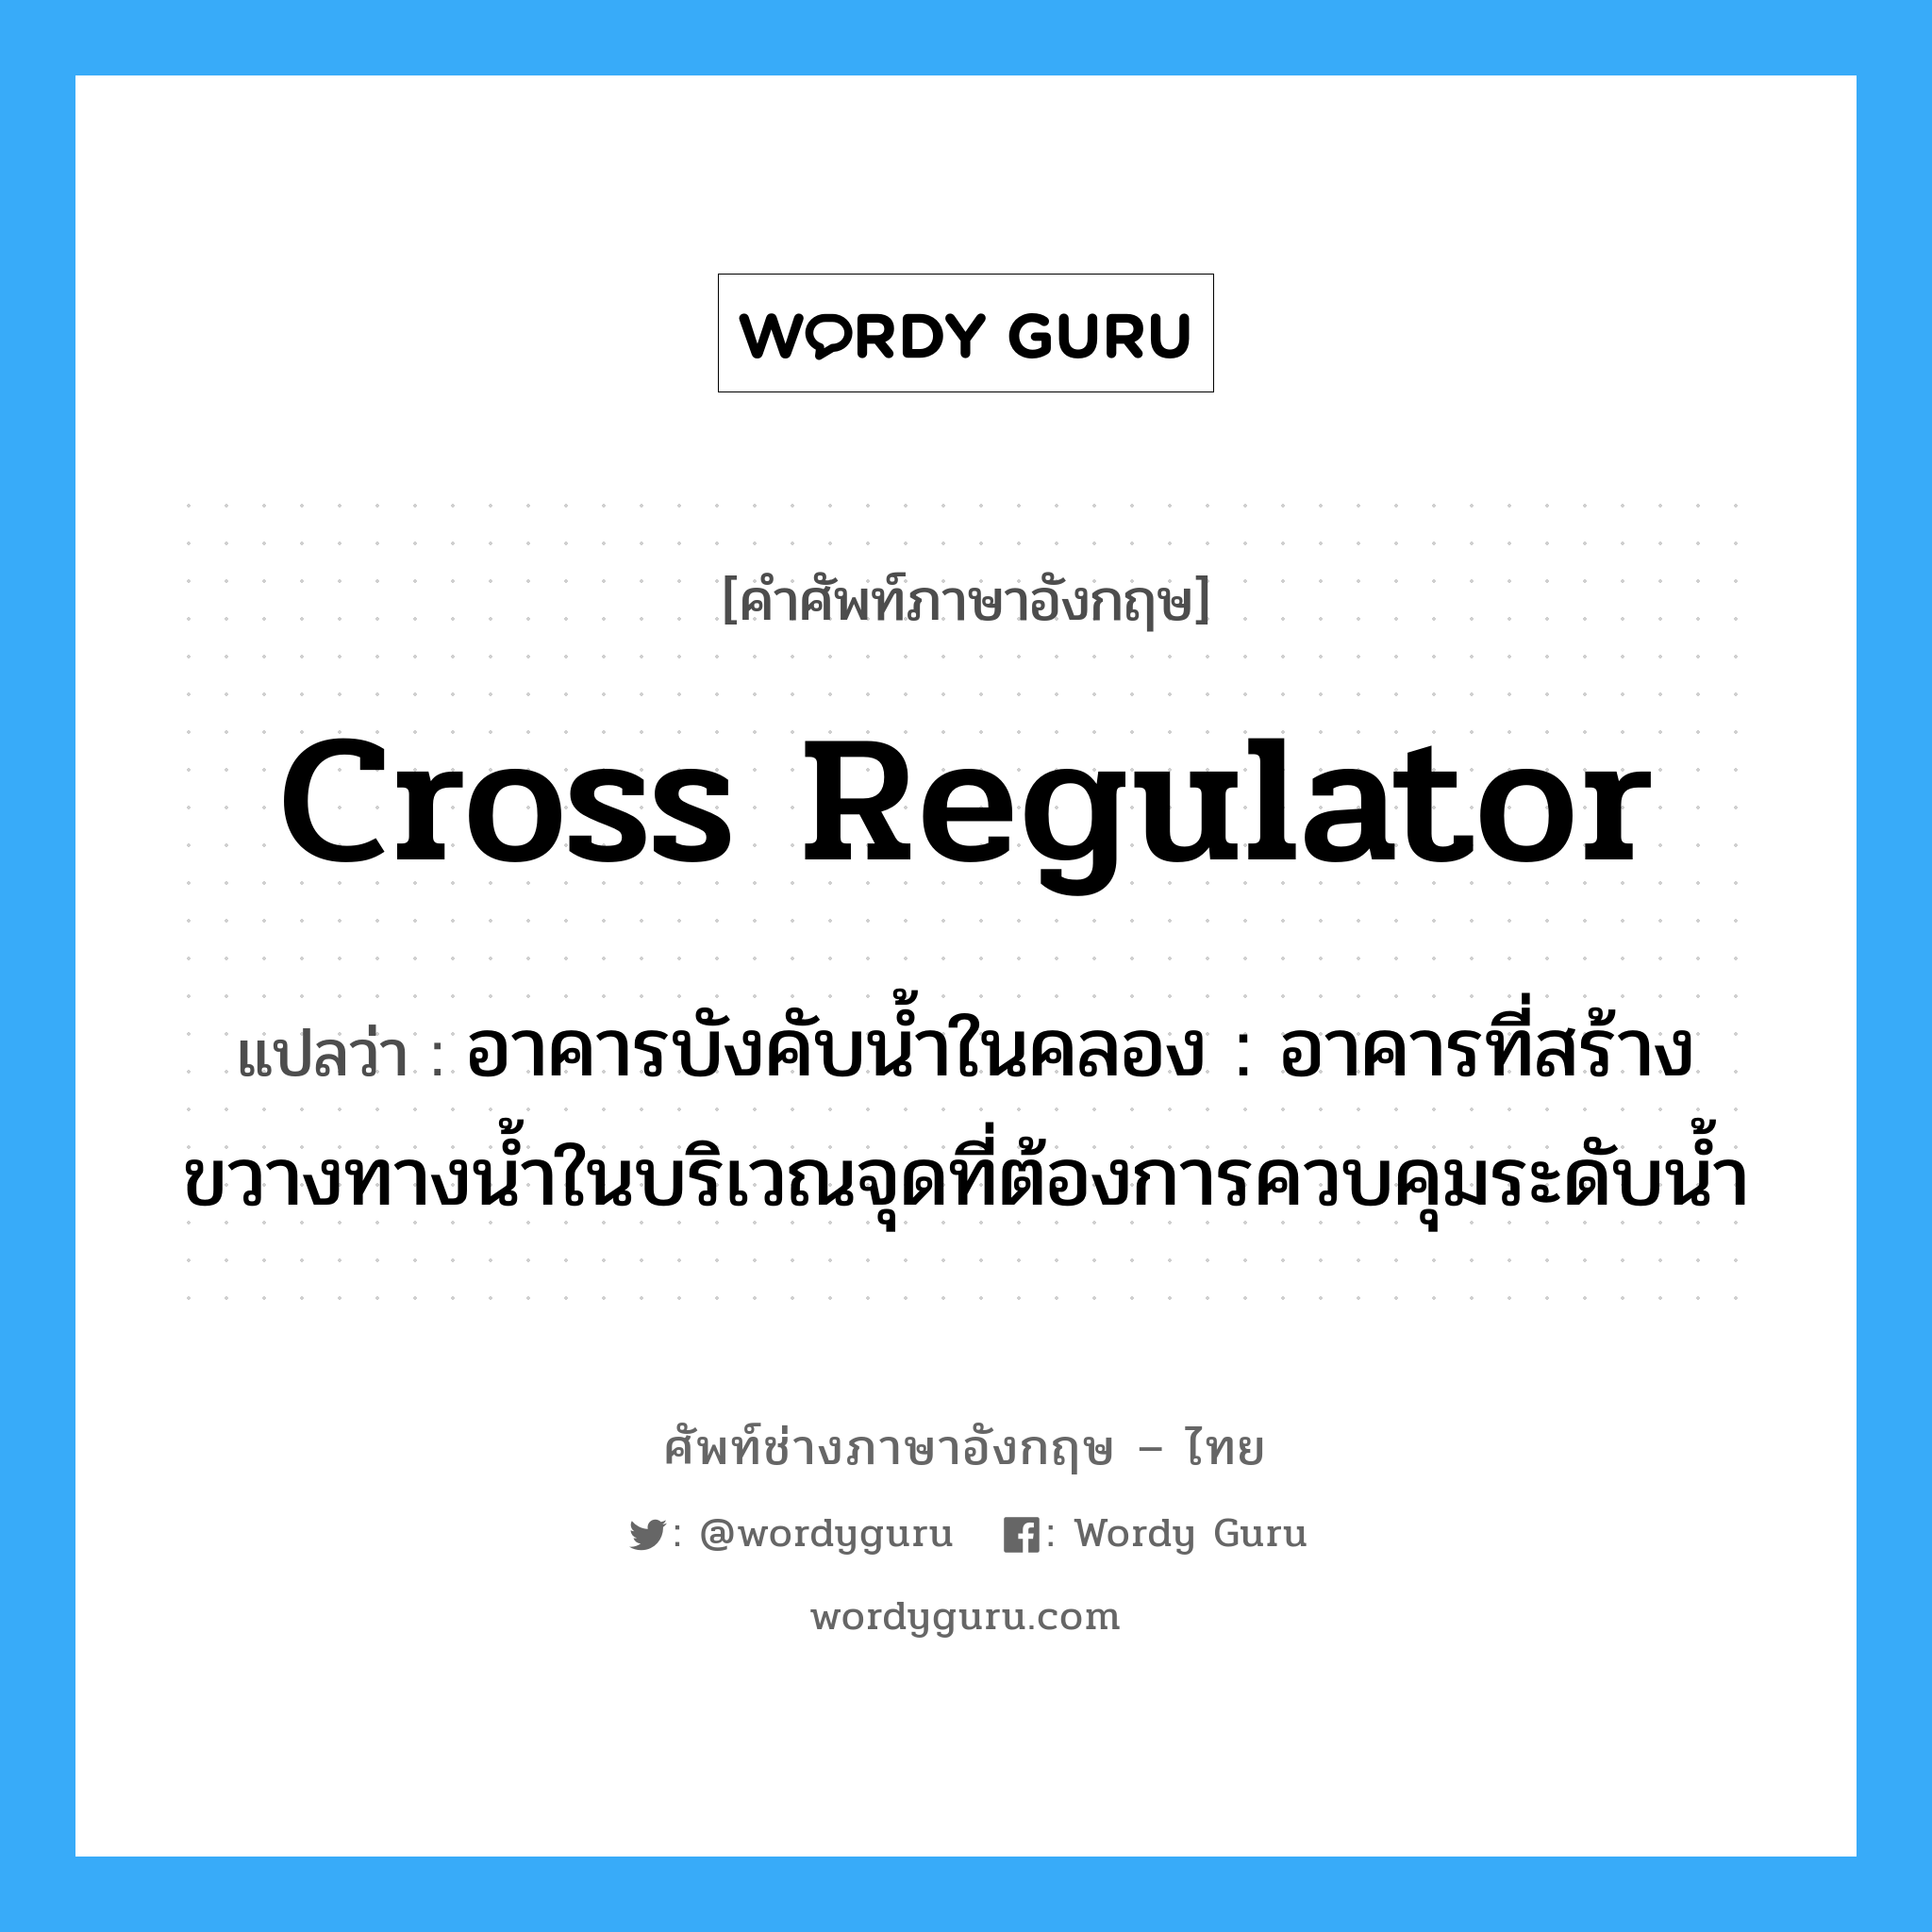 cross regulator แปลว่า?, คำศัพท์ช่างภาษาอังกฤษ - ไทย cross regulator คำศัพท์ภาษาอังกฤษ cross regulator แปลว่า อาคารบังคับน้ำในคลอง : อาคารที่สร้างขวางทางน้ำในบริเวณจุดที่ต้องการควบคุมระดับน้ำ